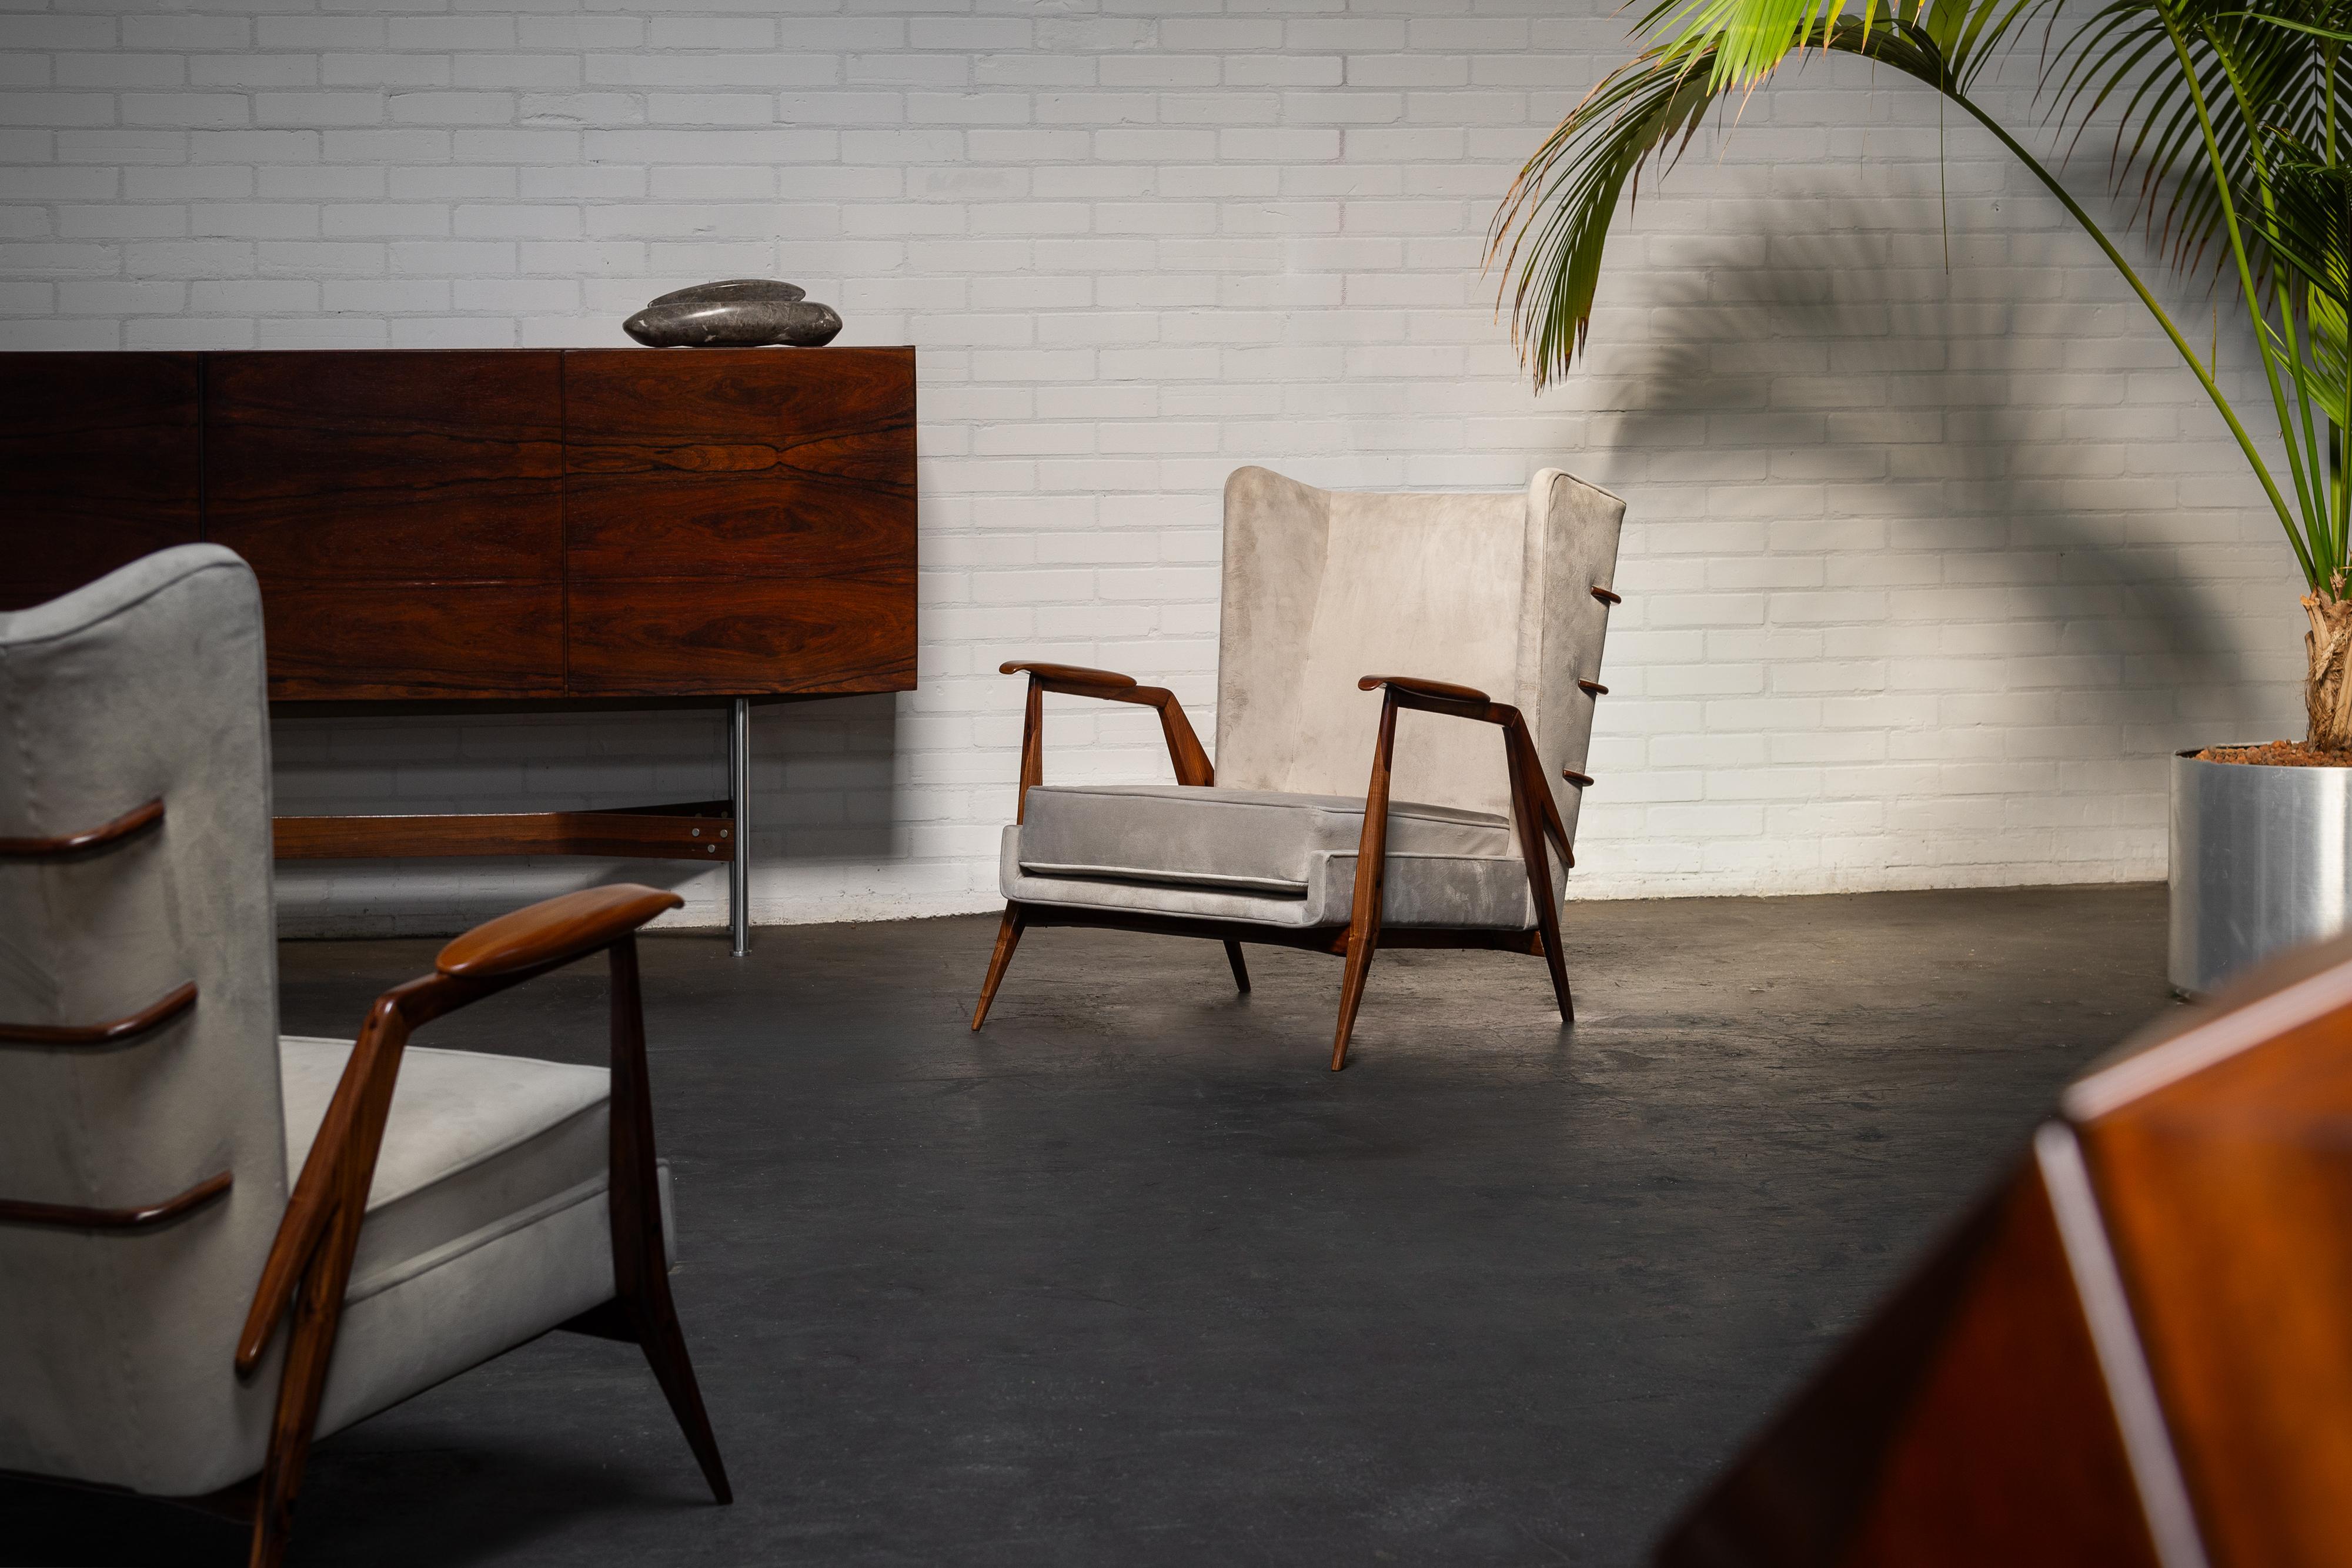 Magnifiques chaises longues conçues par Giuseppe Scapinelli et fabriquées par sa propre usine Fábrica de Móveis Giesse au Brésil en 1950. Ces chaises longues sont dotées d'un cadre en bois de rose massif qui est presque une œuvre d'art en soi. Les